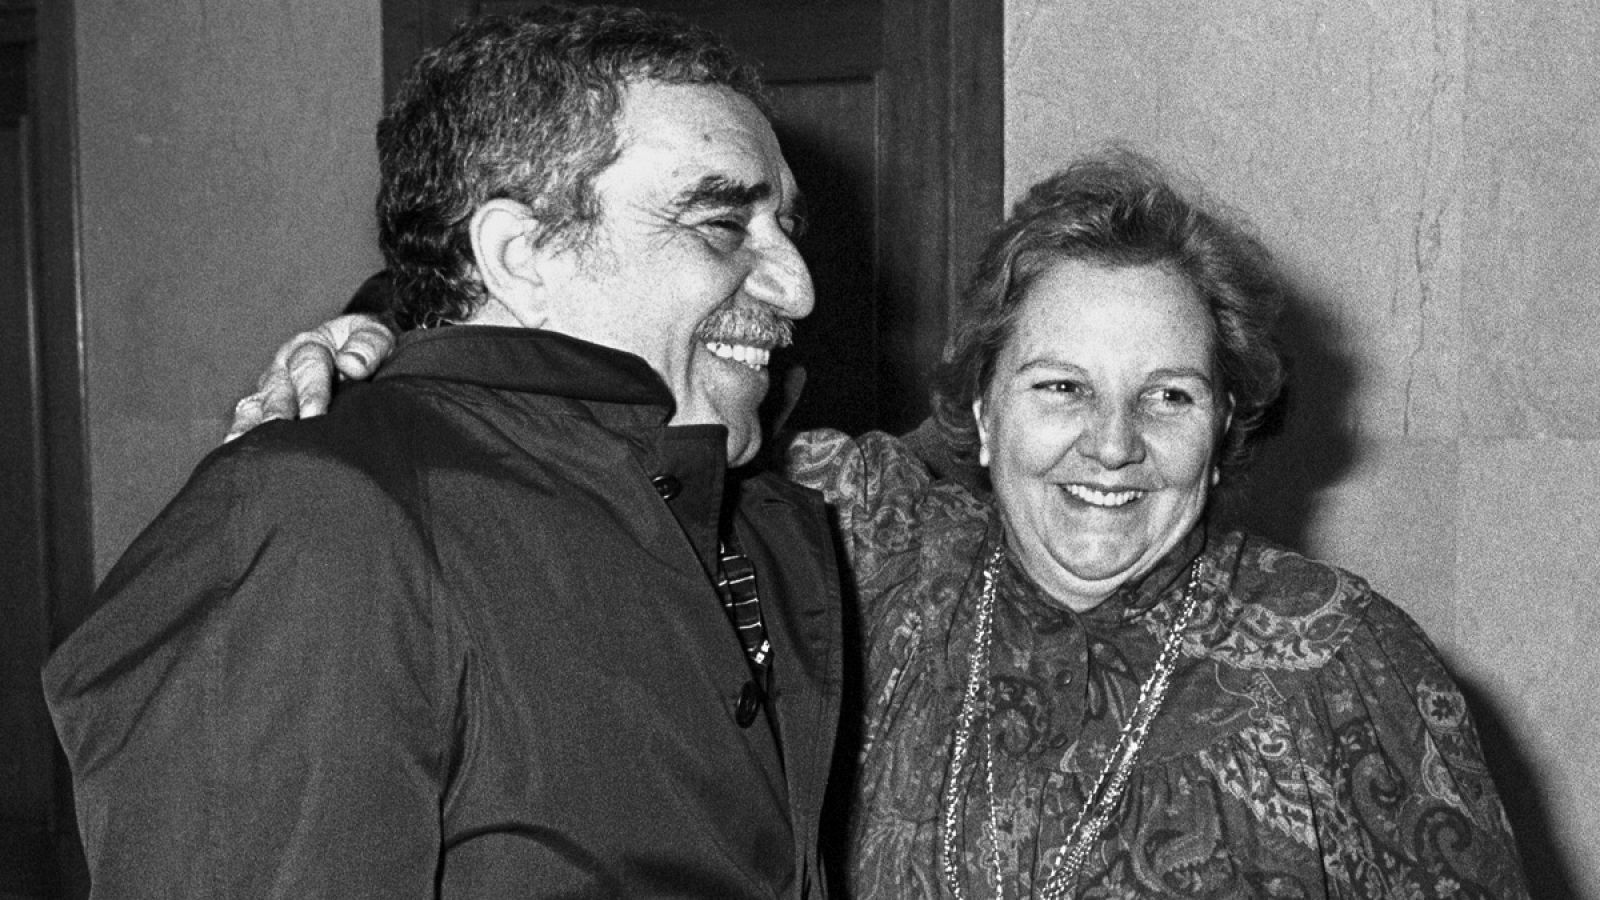 La agente literaria Carmen Balcells con uno de sus representados, Gabriel García Márquez.